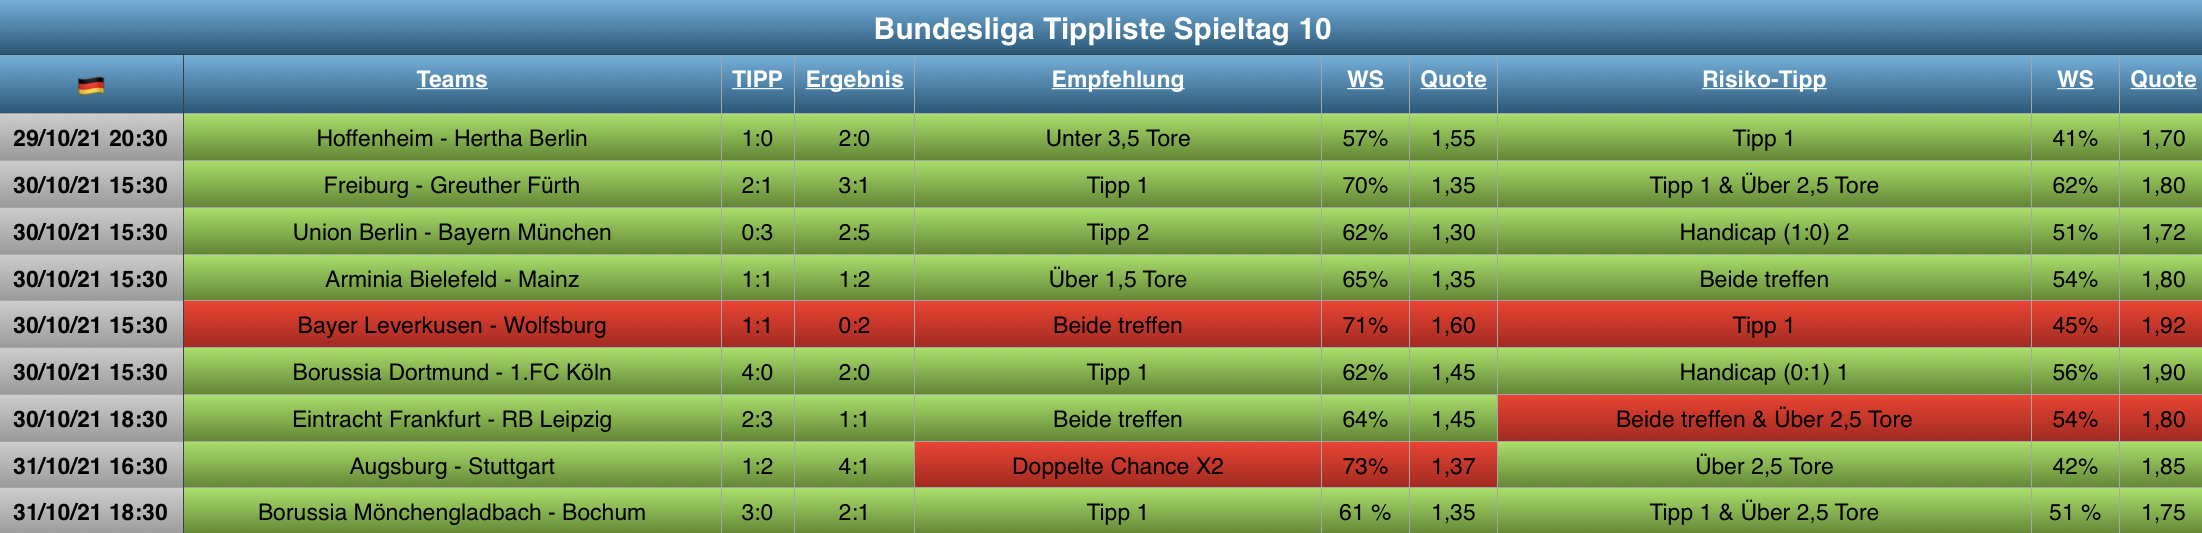 Auswertung Bundesliga Tippliste Spieltag 10 (2021)